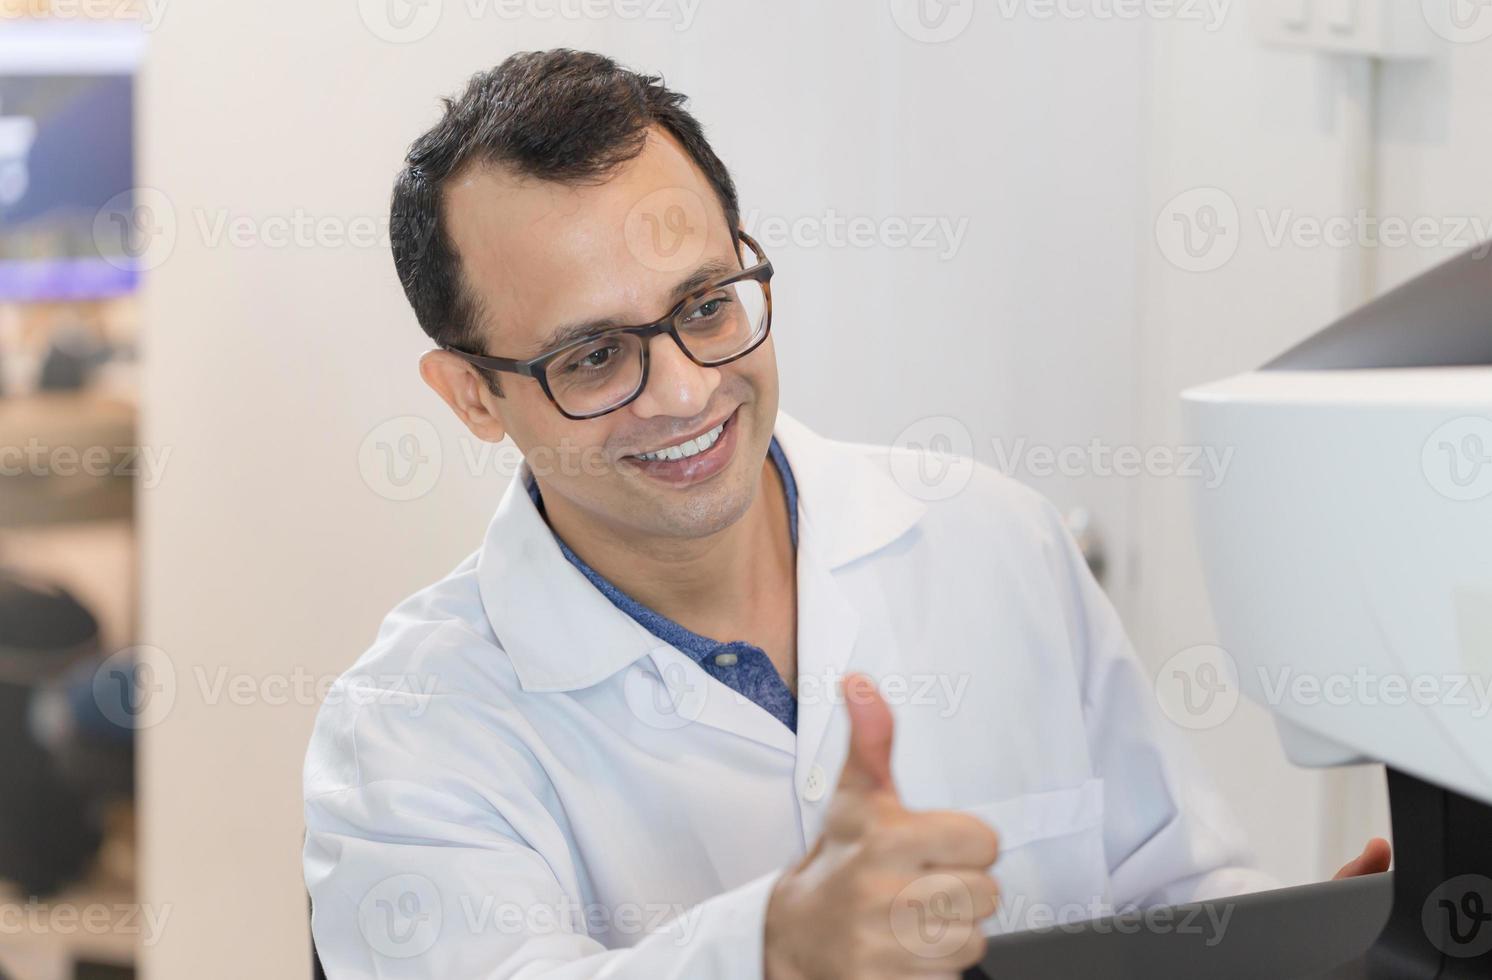 optometrista felice che mostra i pollici in su nel negozio di ottica, optometrista indiano sorridente foto